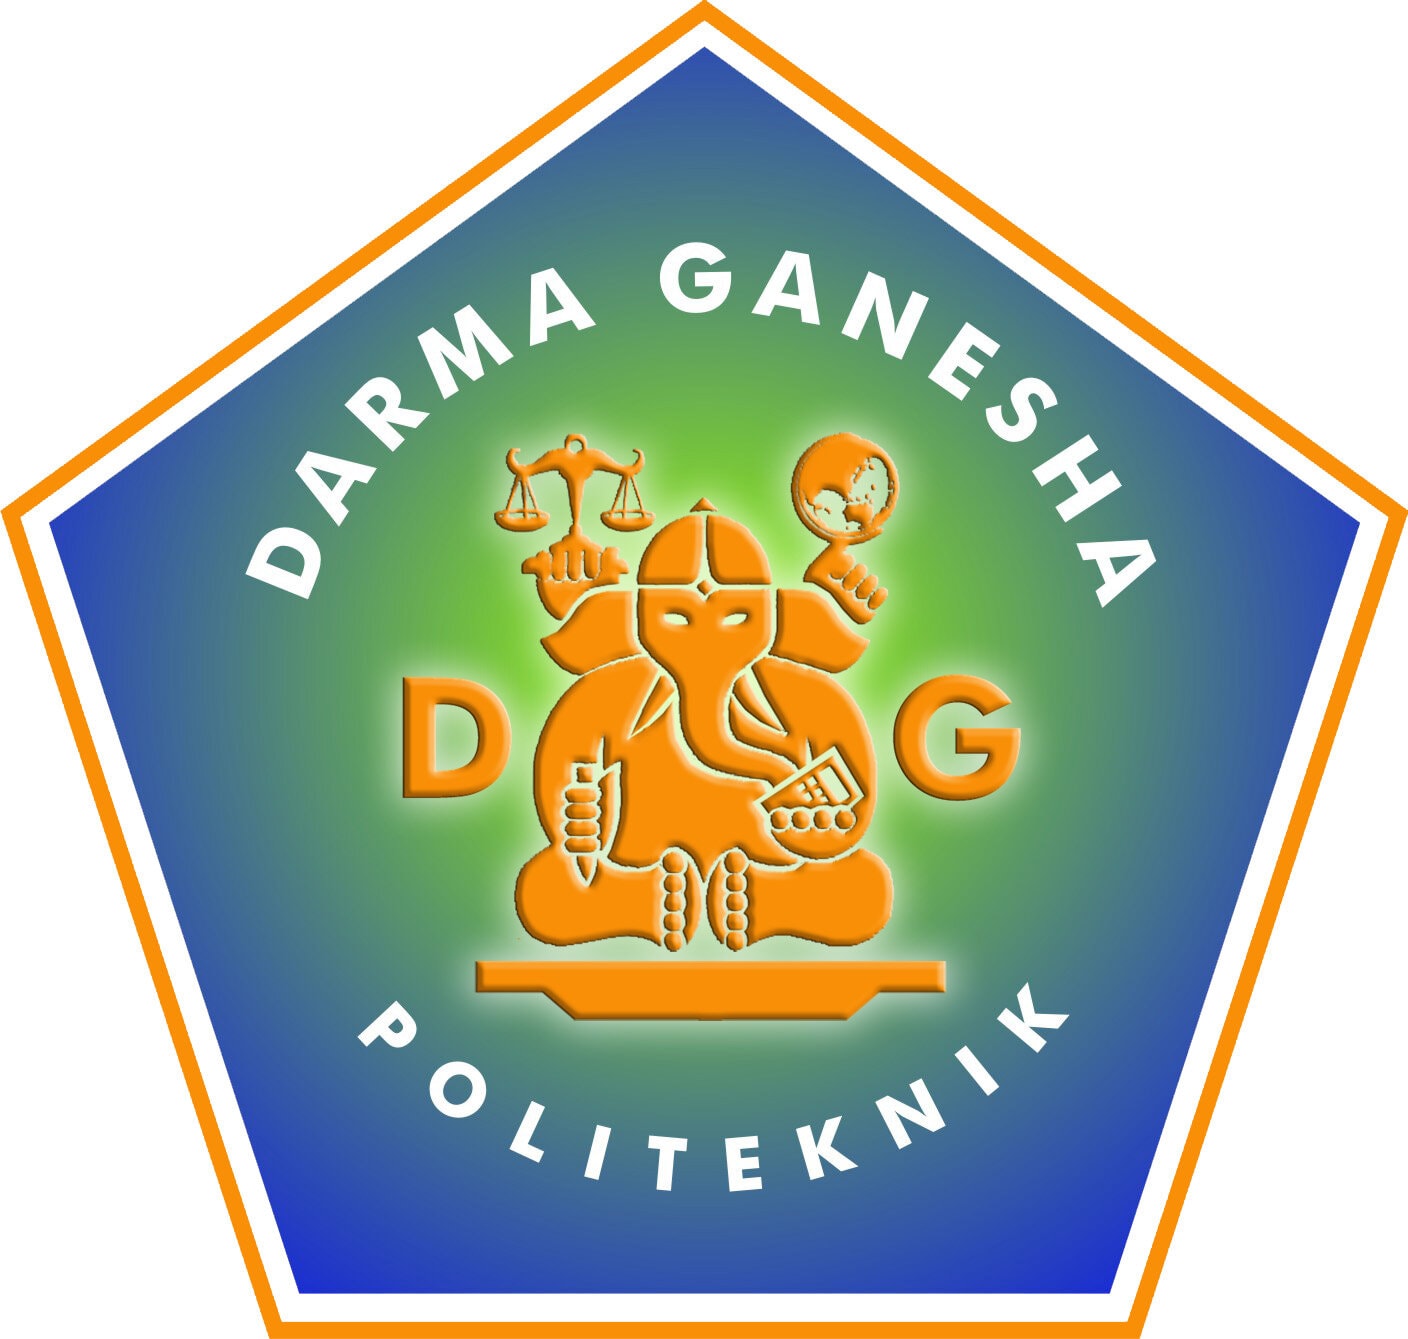 Politeknik Darma Ganesha